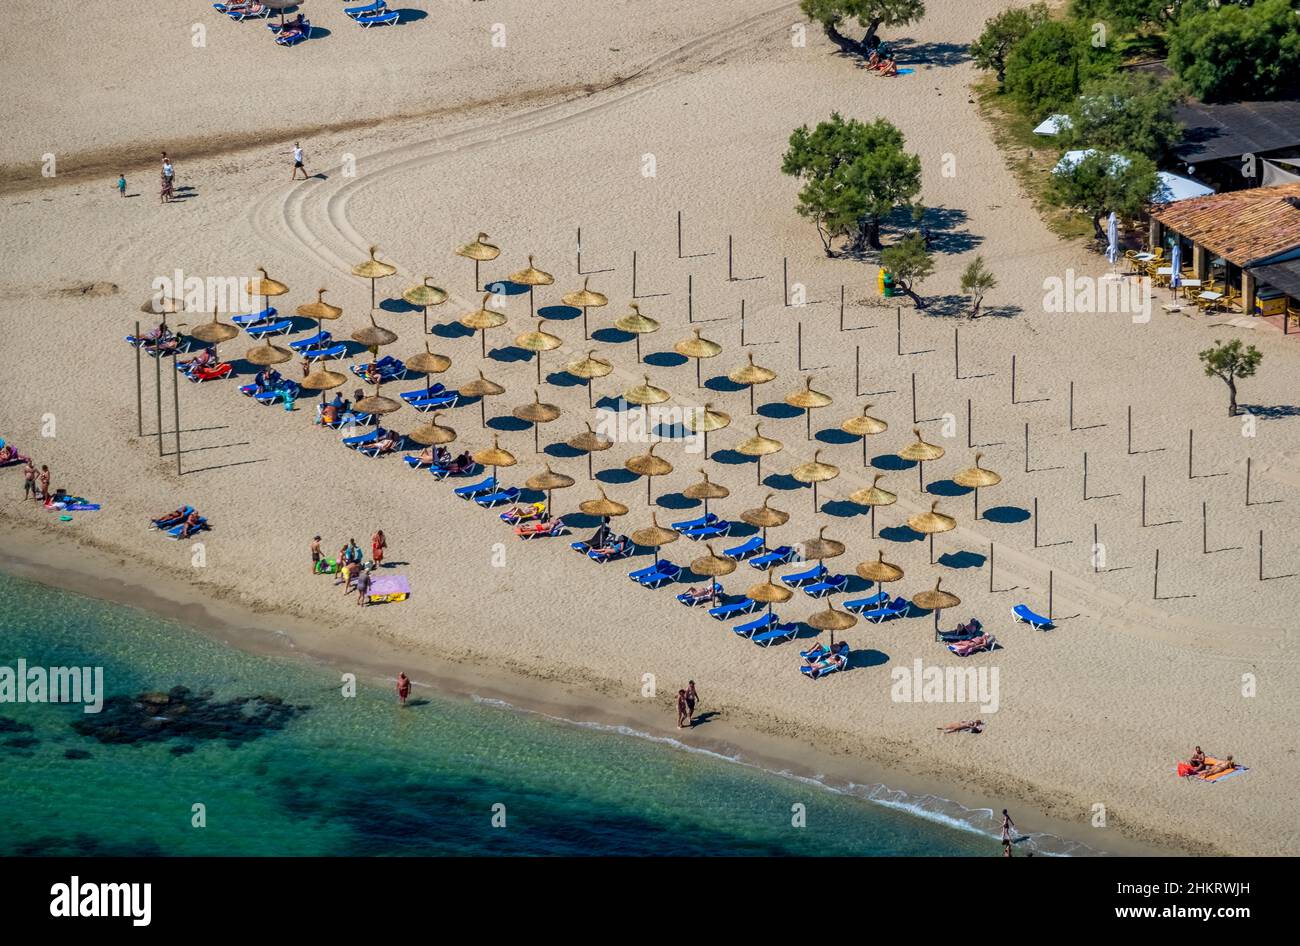 Luftbild, Strand und Strandleben mit Strohschirmen und Liegestühlen am Strand Platja d'Alcúdia, Alcúdia, Mallorca, Balearen, Spanien, bather Stockfoto